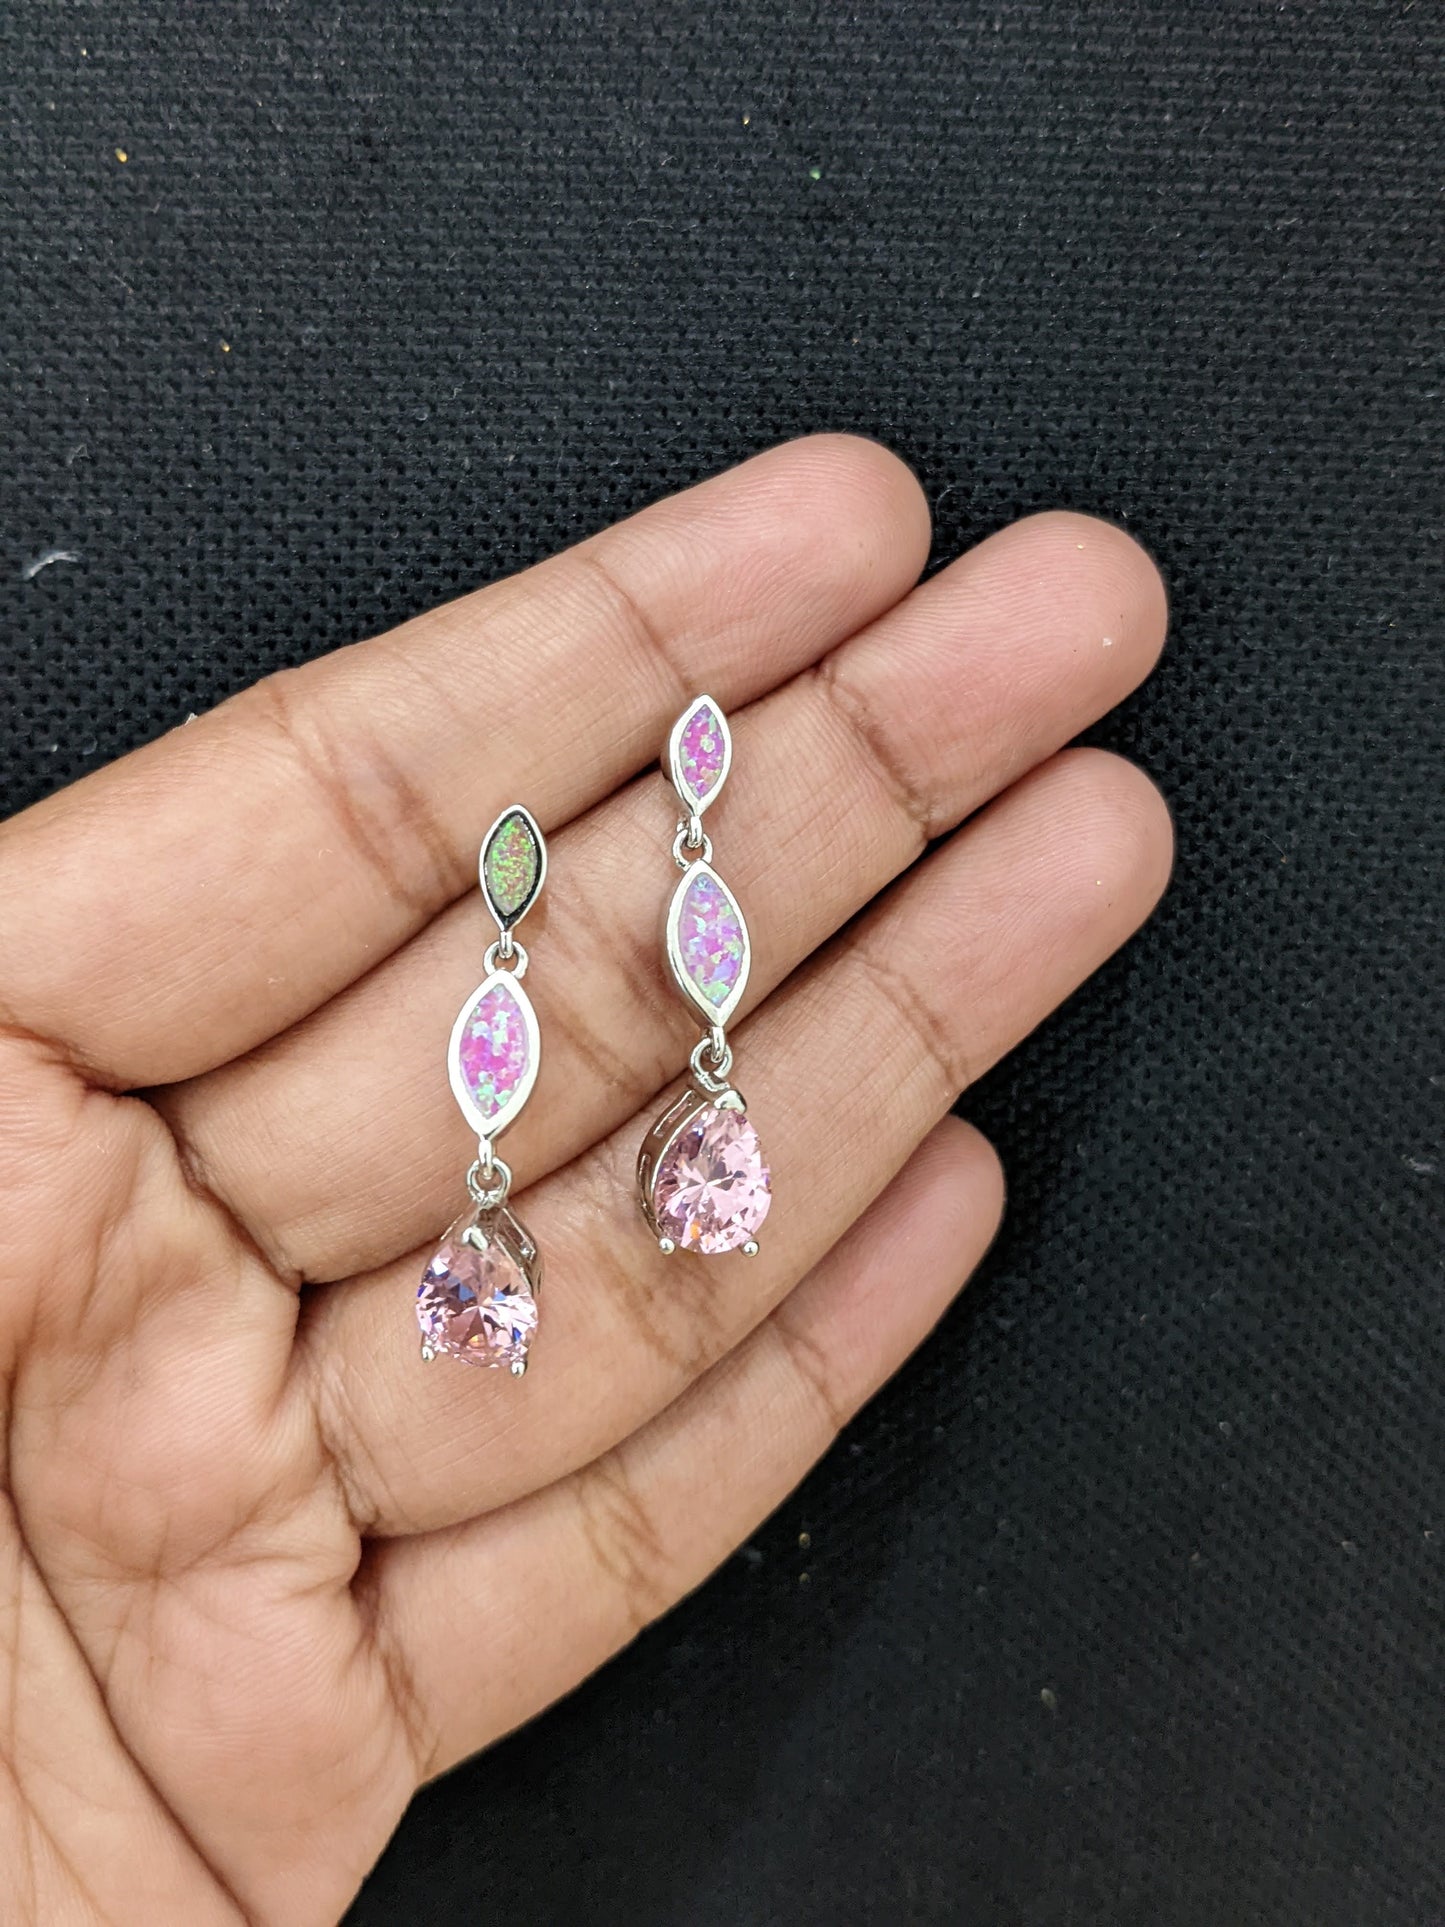 Triple tear drop Pink opal Earrings - Simpliful